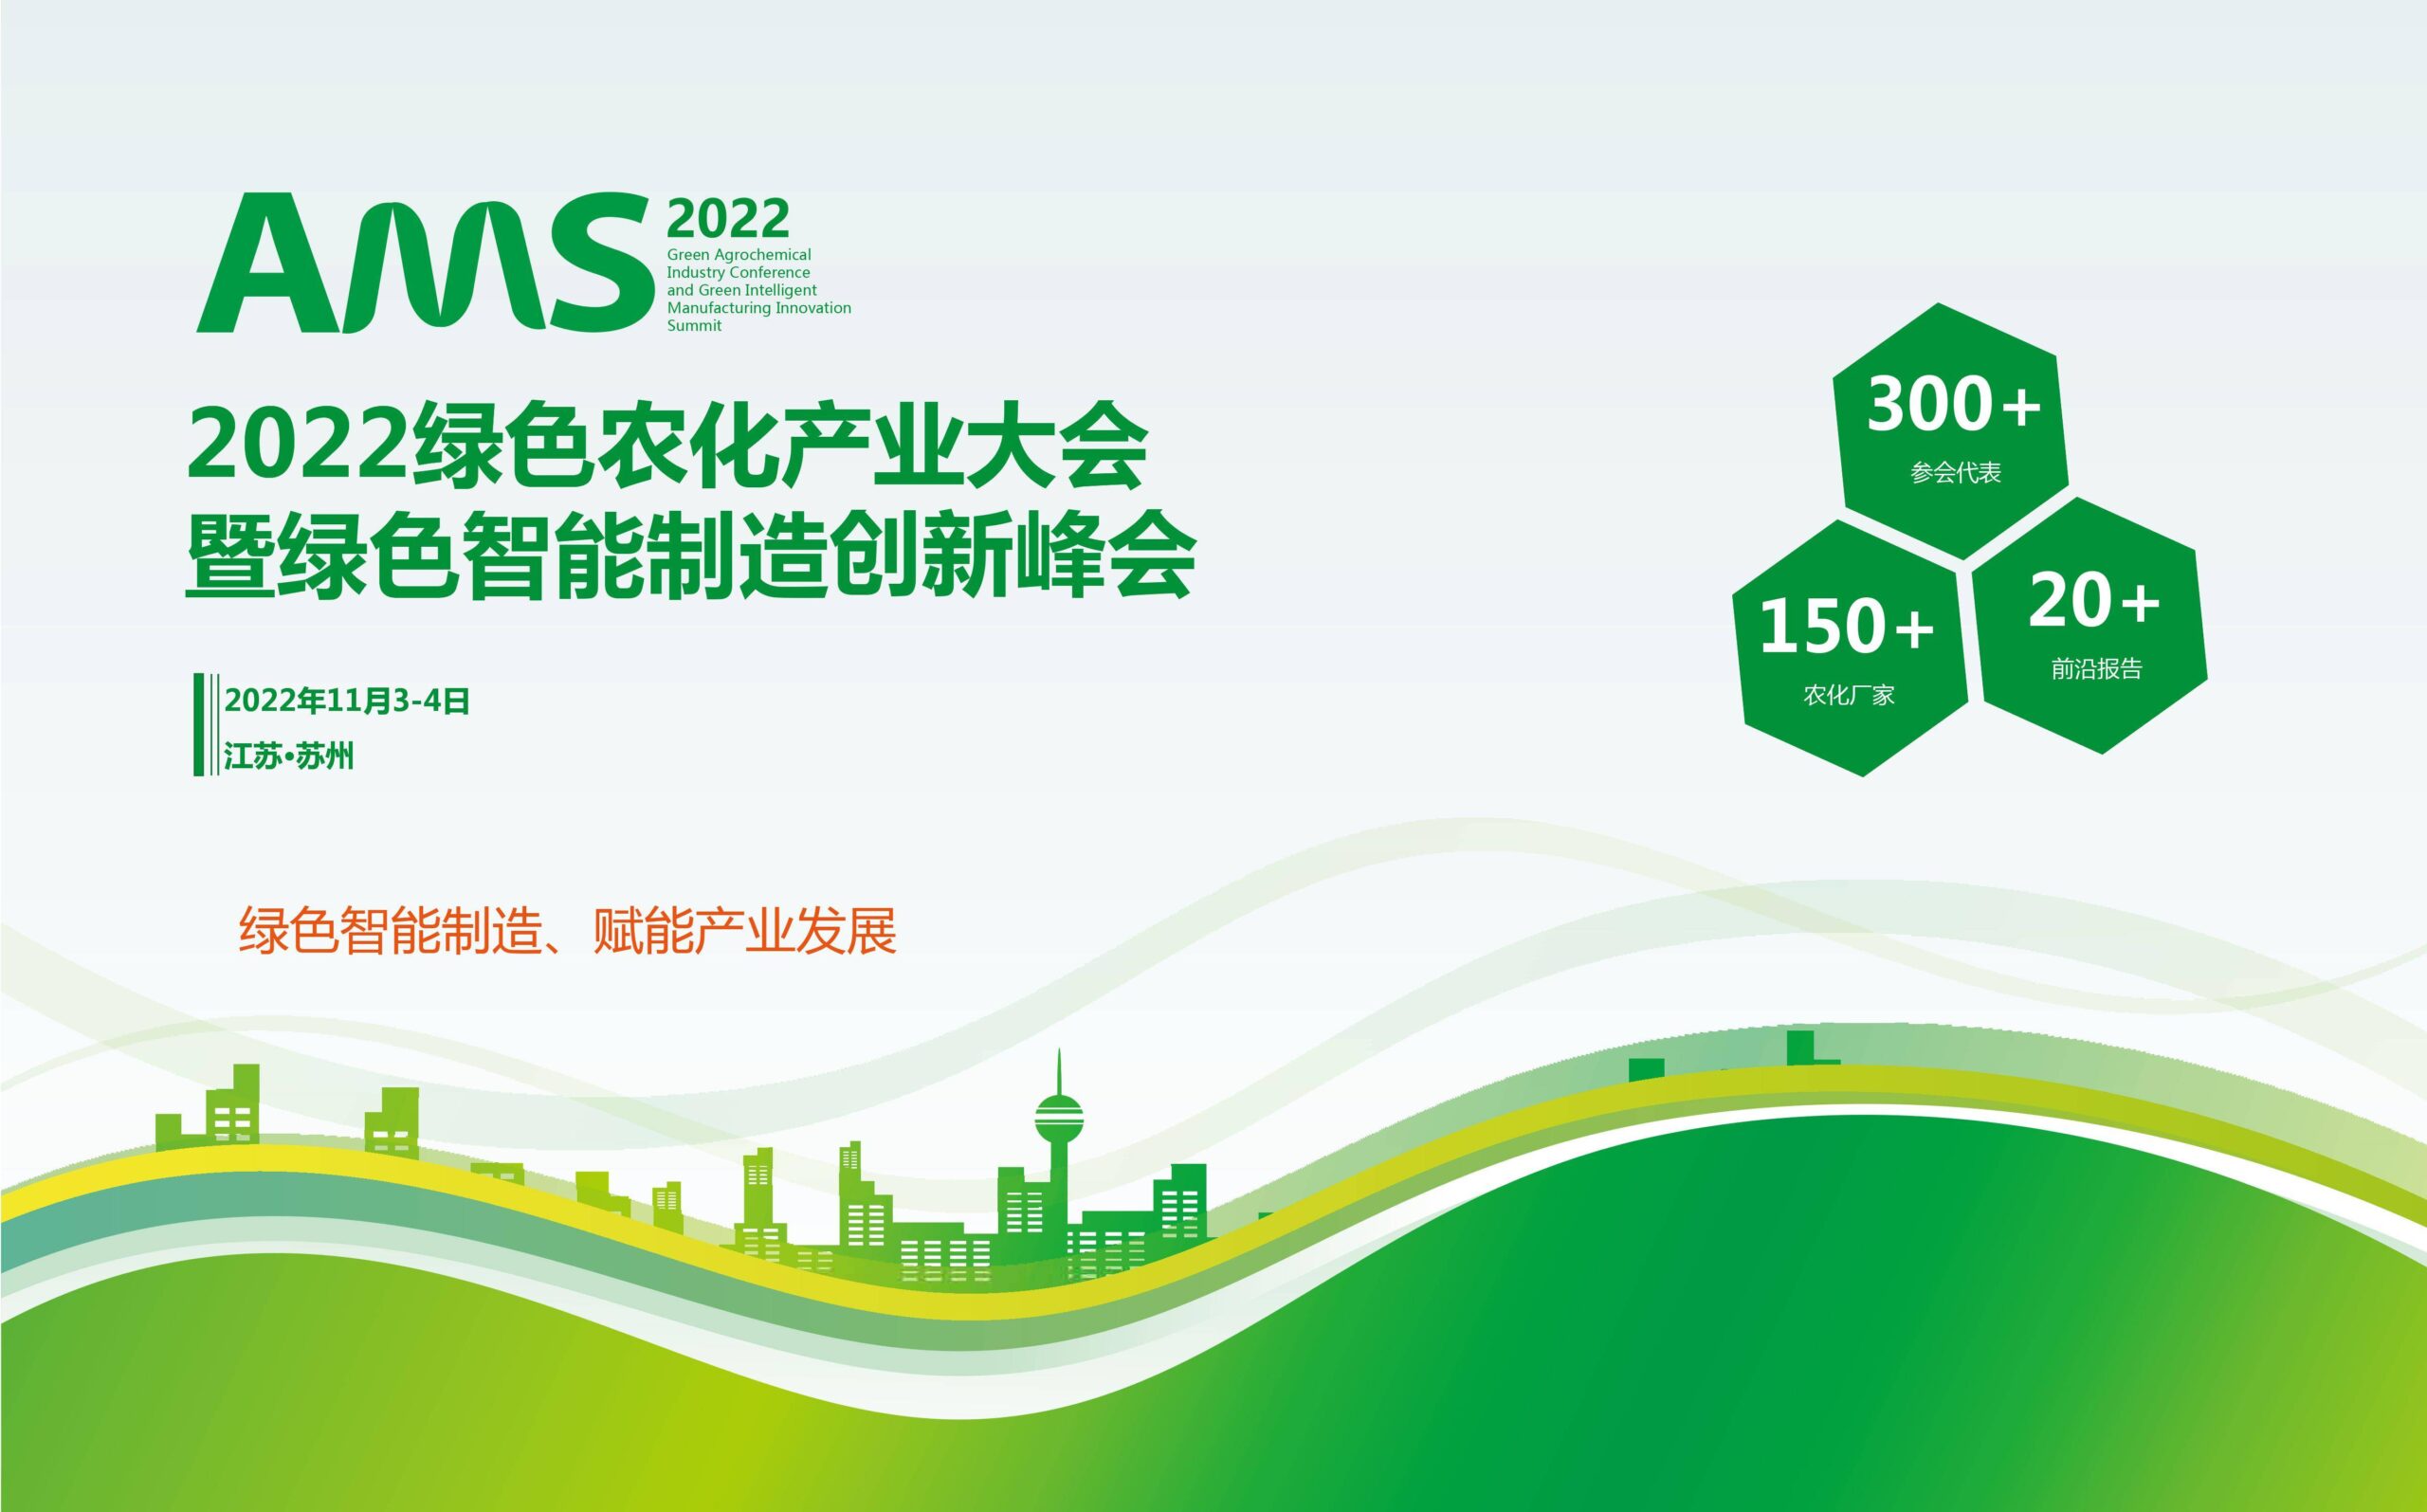 2022绿色农化产业大会暨绿色智能制造创新峰会